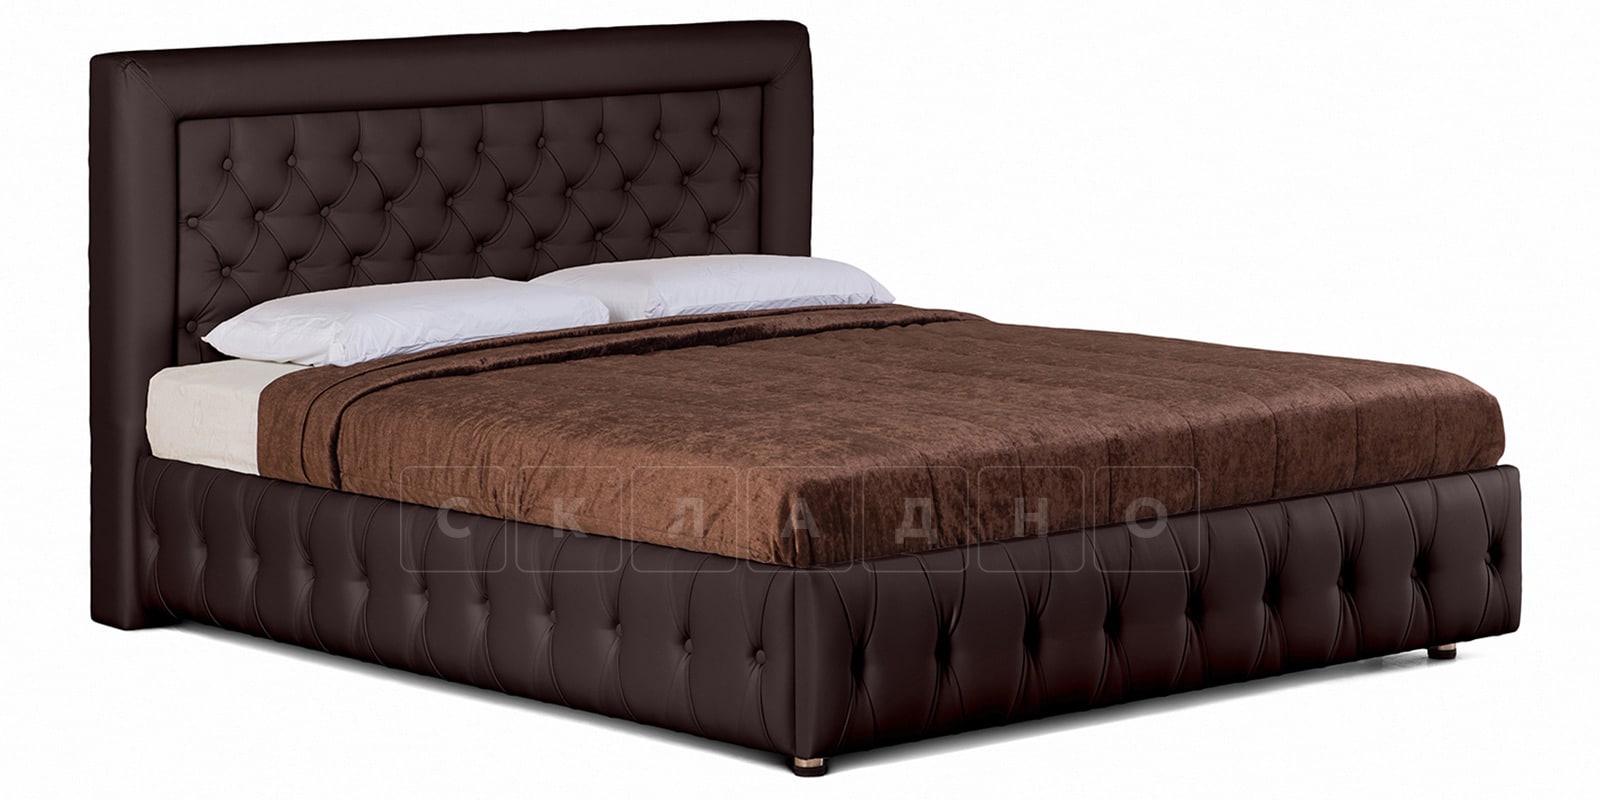 Мягкая кровать Малибу 160см экокожа шоколадного цвета вариант 7 фото 1 | интернет-магазин Складно